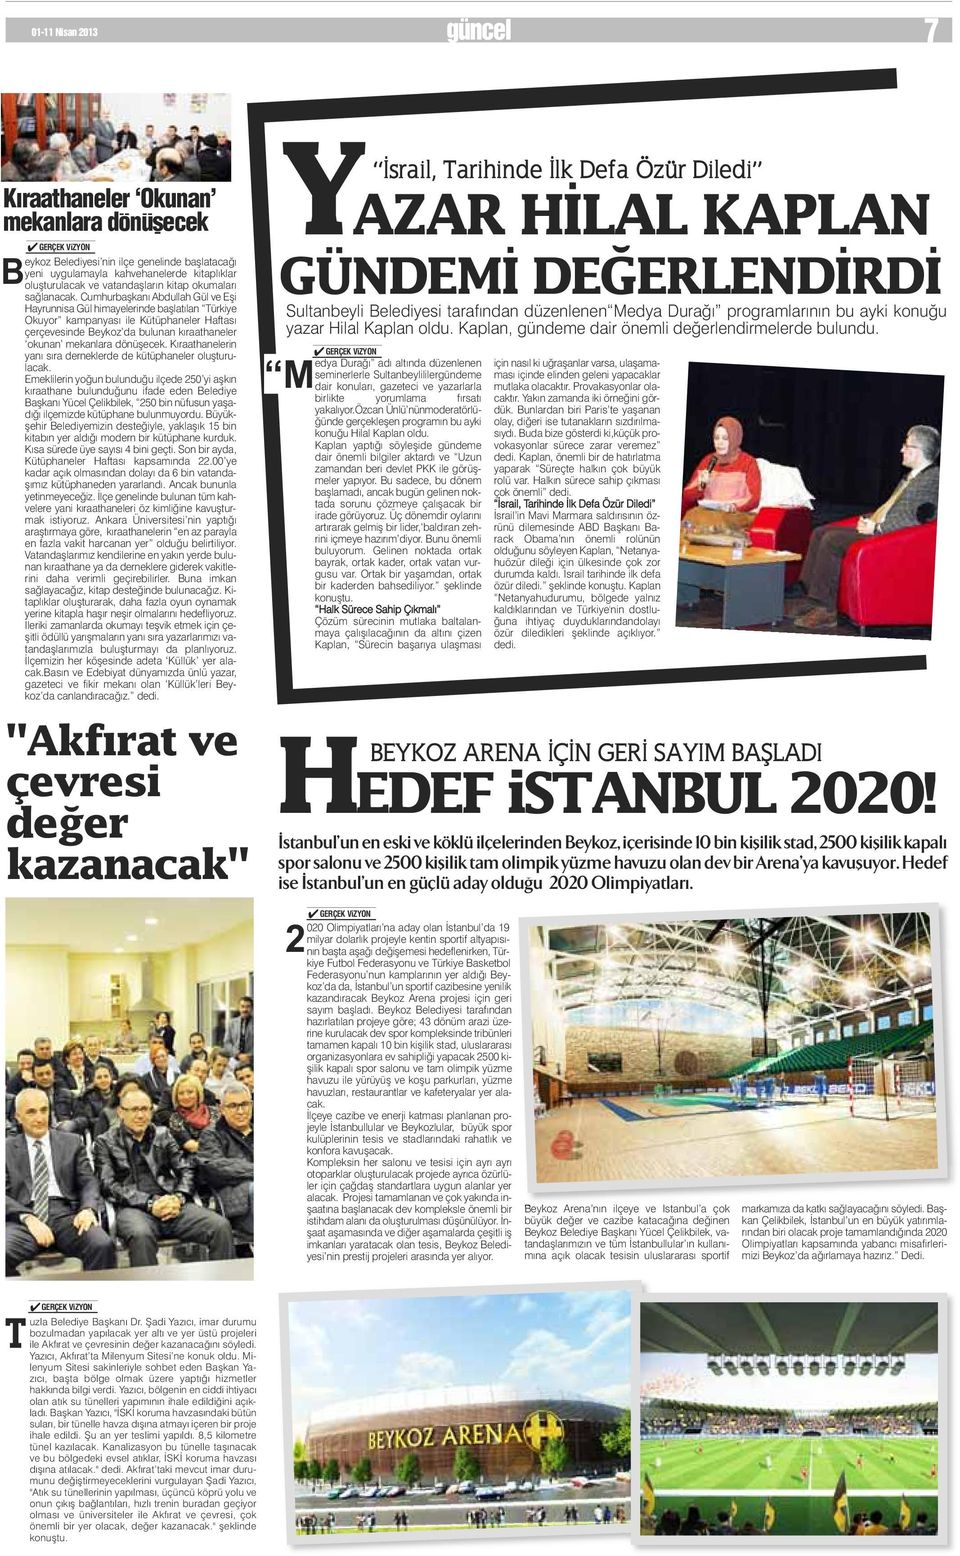 Cumhurbaşkanı Abdullah Gül ve Eşi Hayrunnisa Gül himayelerinde başlatılan Türkiye Okuyor kampanyası ile Kütüphaneler Haftası çerçevesinde Beykoz da bulunan kıraathaneler okunan mekanlara dönüşecek.